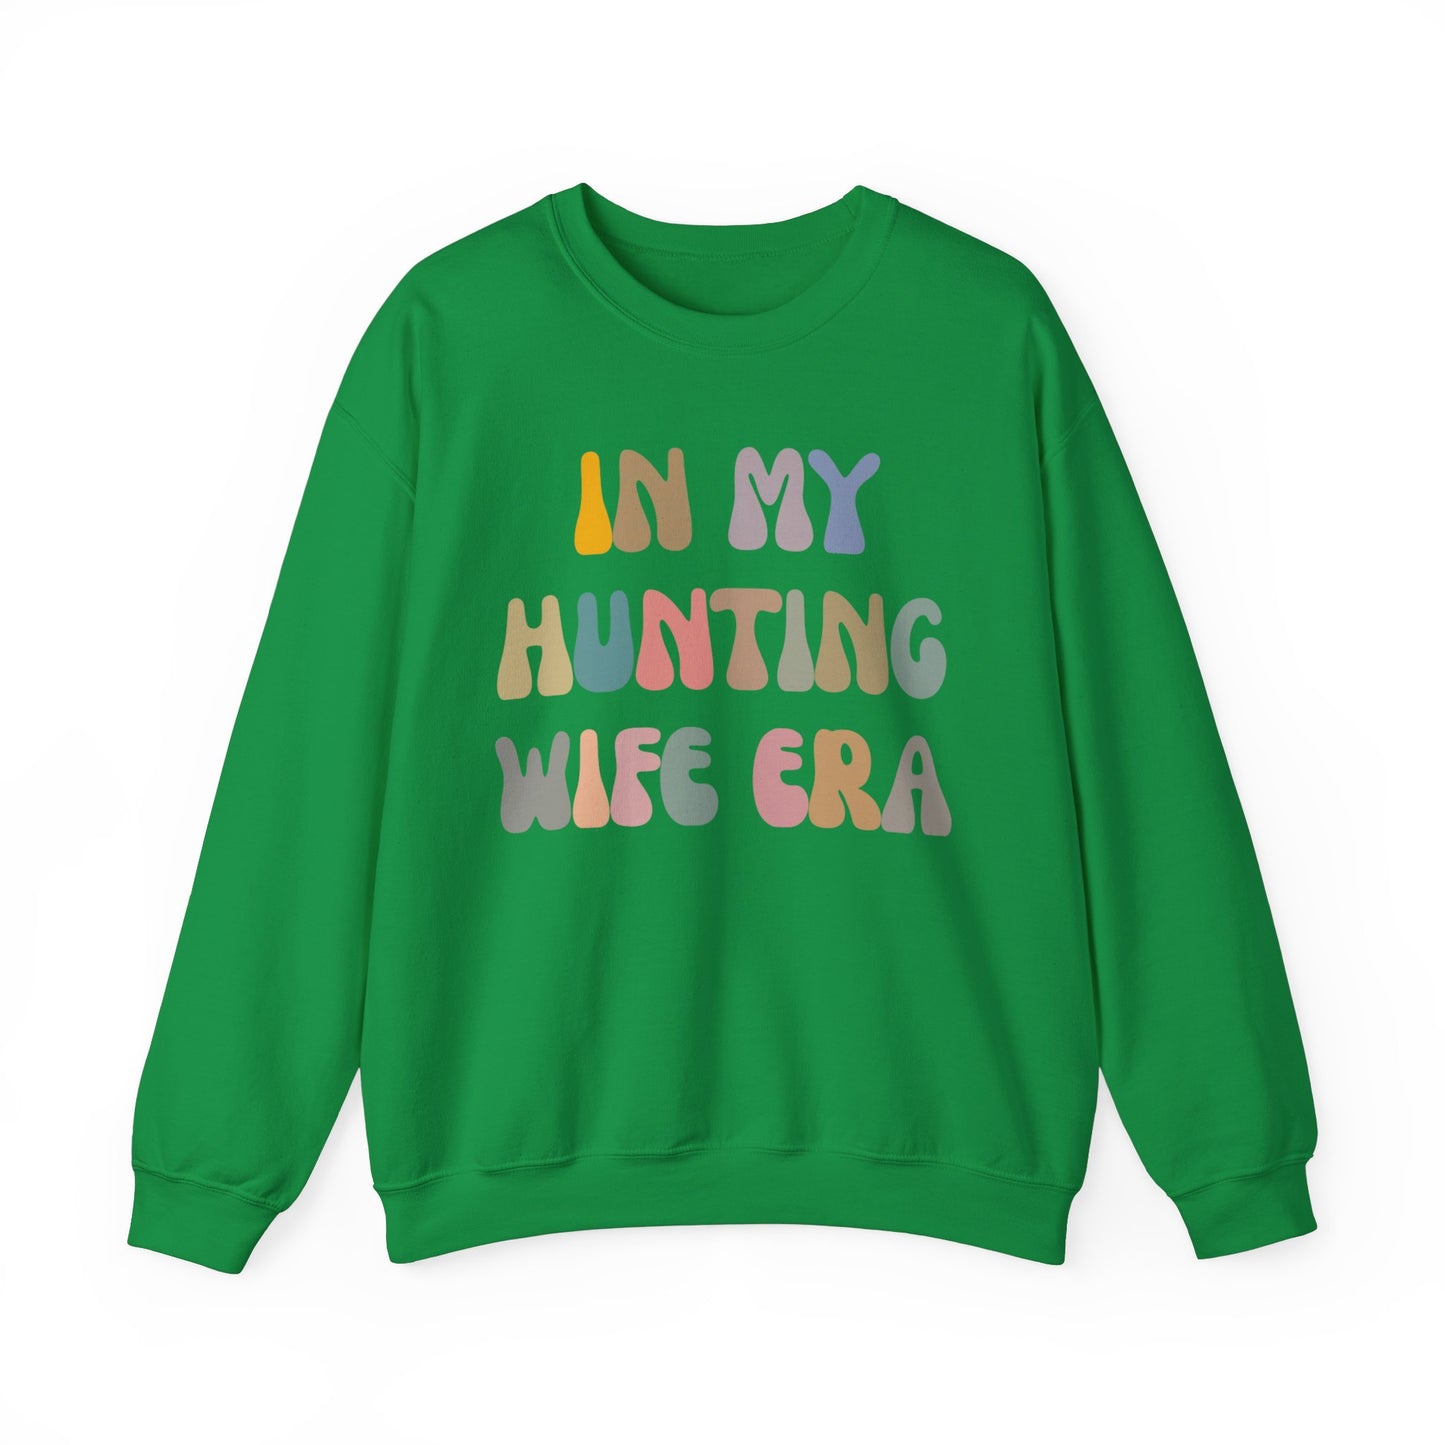 In My Hunting Wife Era Sweatshirt, Hunter Wife Sweatshirt, Gift for Wife from Husband, Hunting Wife Sweatshirt, Hunting Season Shirt, S1317